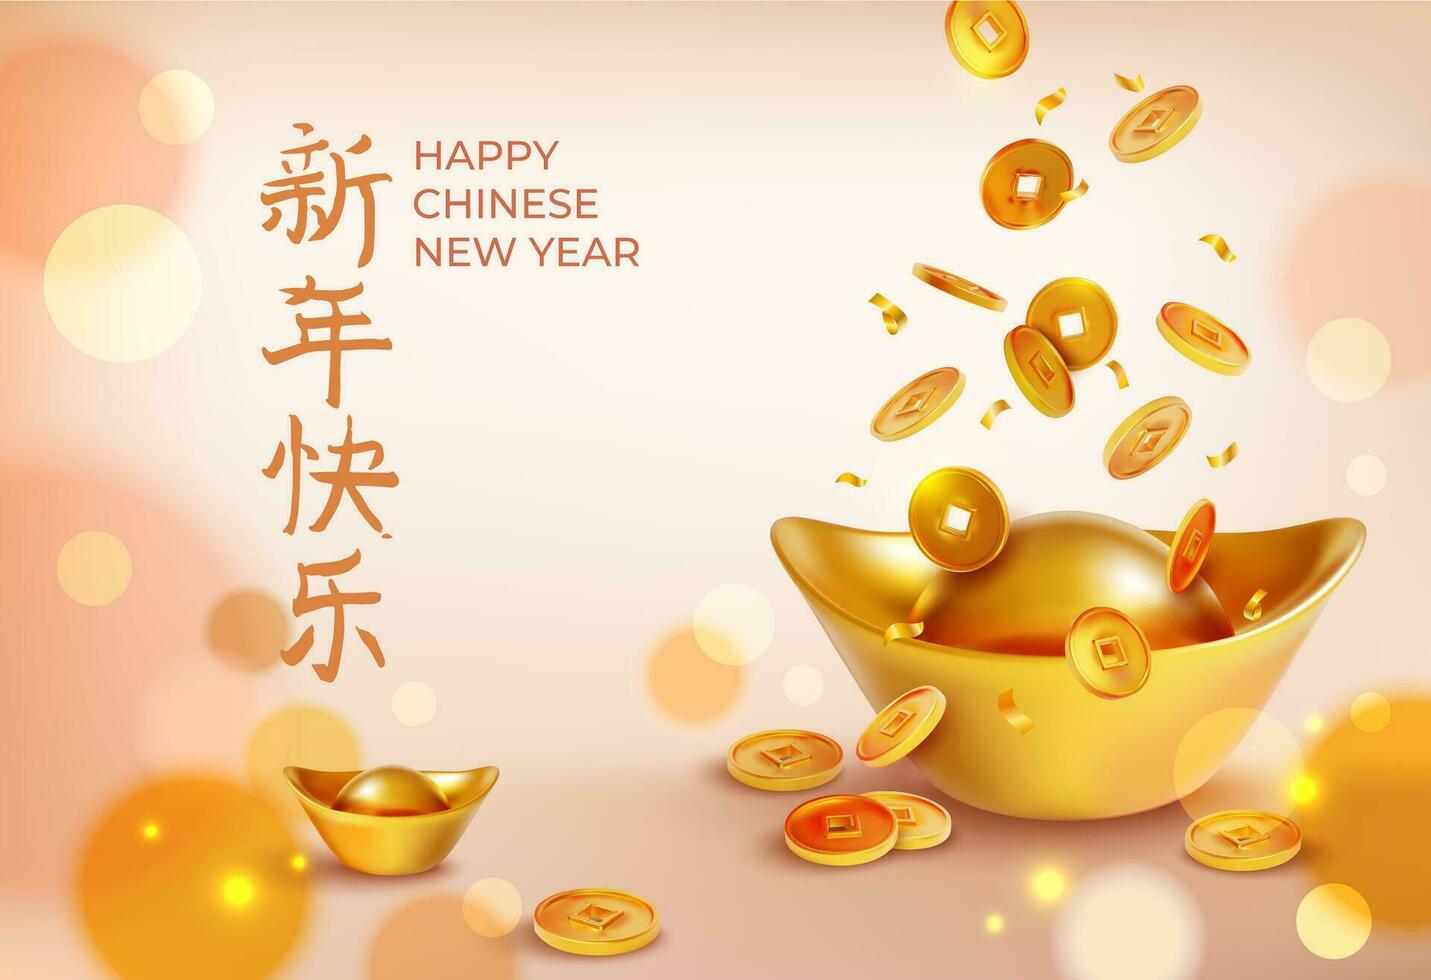 contento chino nuevo año concepto póster tarjeta. vector